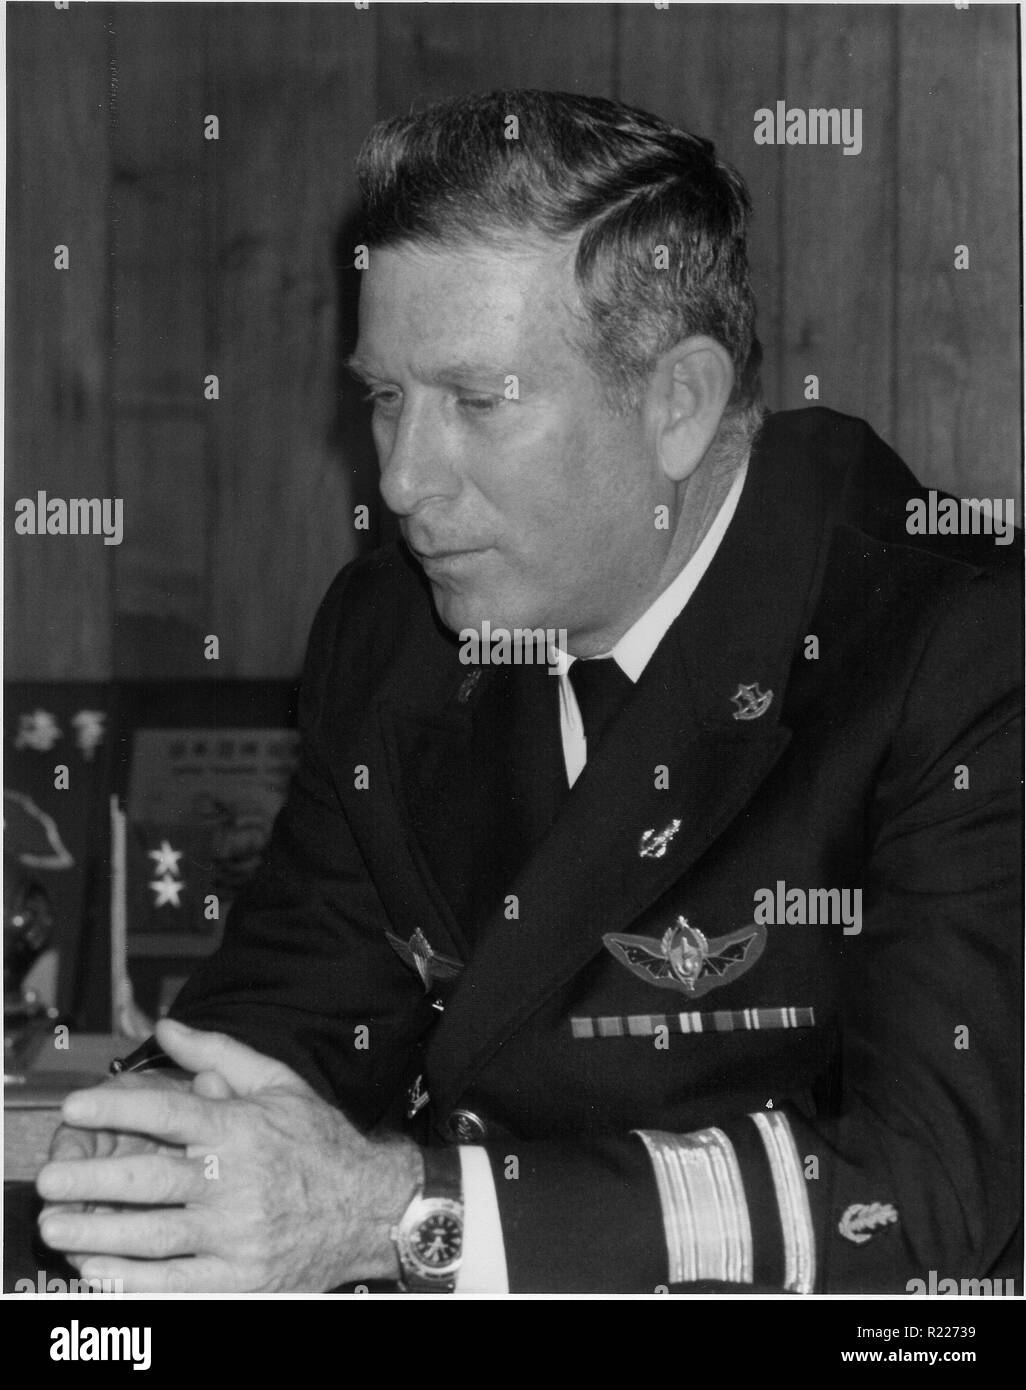 Zeev Almog (1935 - 1995), war der Oberbefehlshaber (C.I.C.) der israelischen Marine, die von 1979-1985. Außerdem war er General Manager von Israel Werften von 1986 bis 1995. c. 1990 Stockfoto